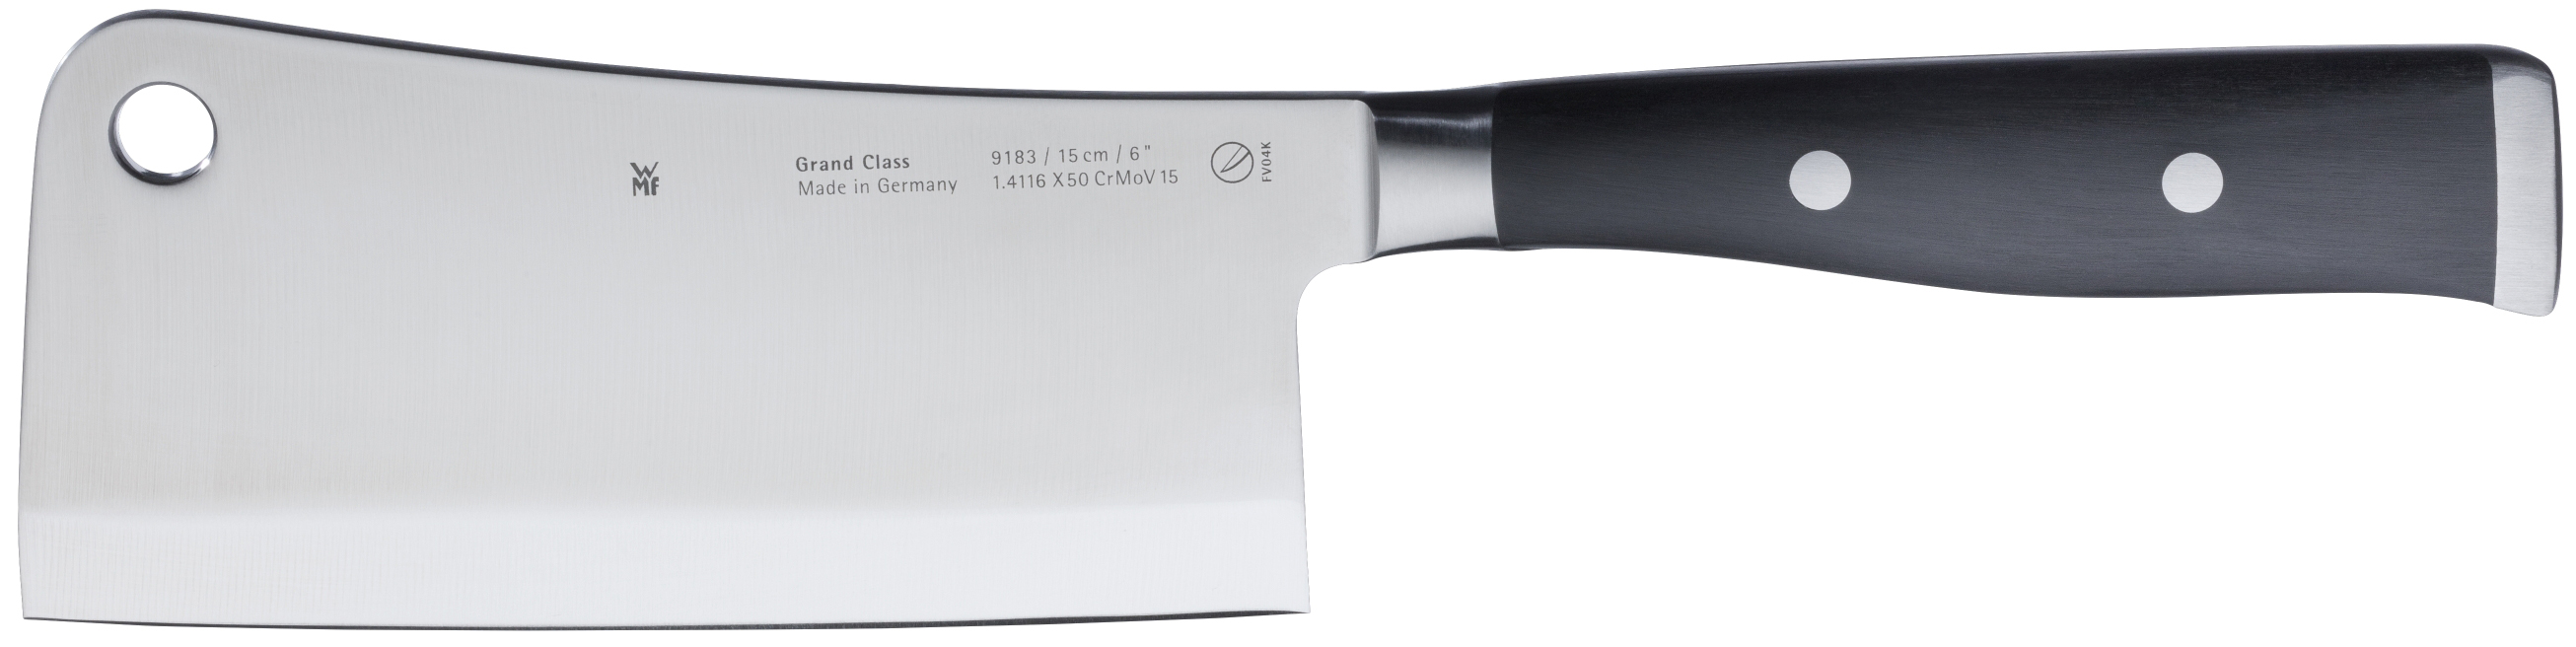 Китайский нож-топорик Grand Class 15 см 1891836032 - фото 1